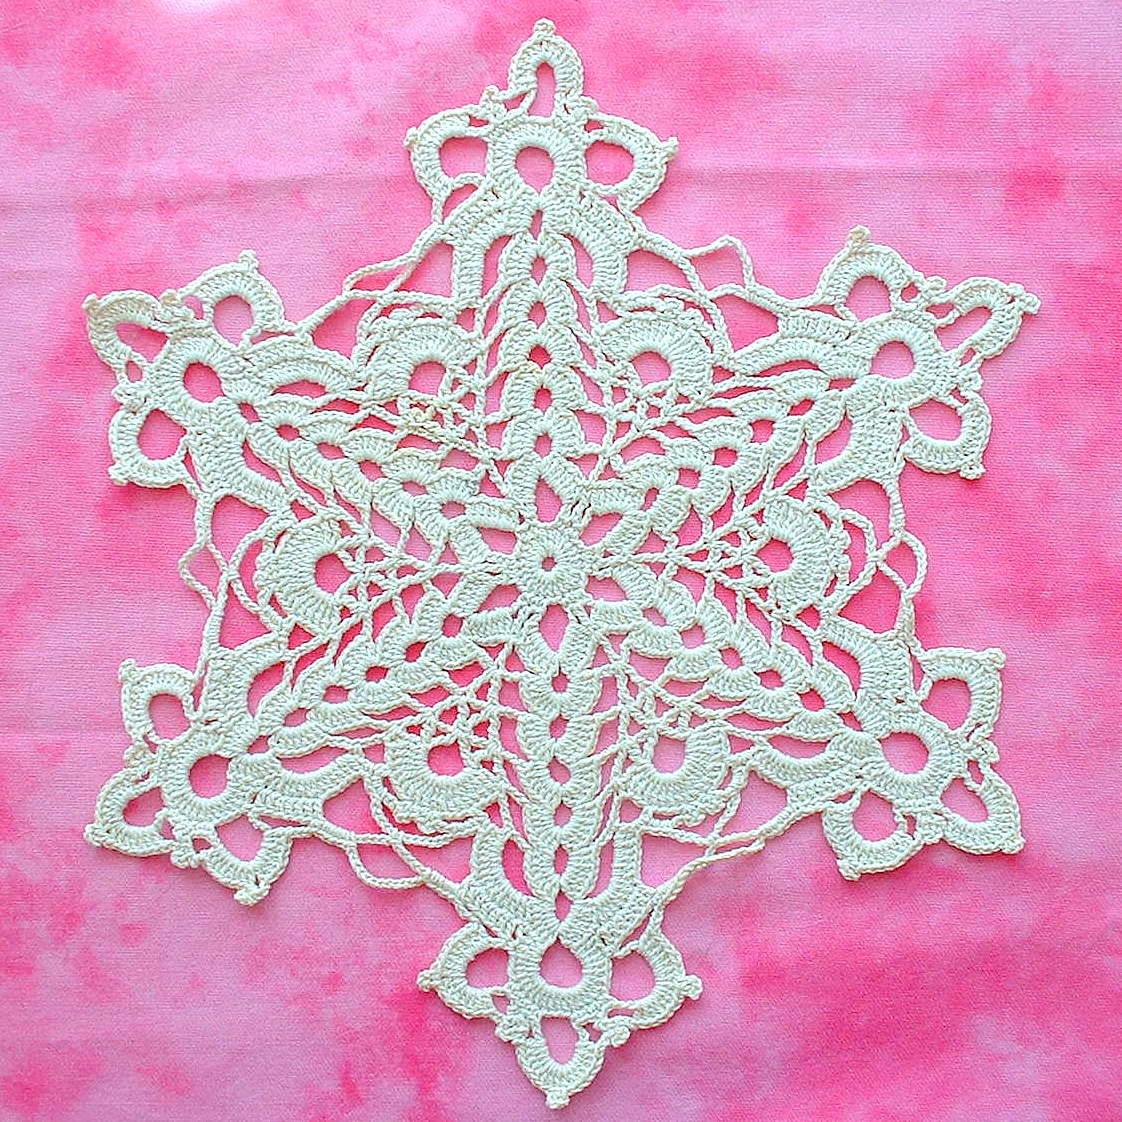 Snowflake Crochet Pattern So Far So Good Cut Glass Snowflake Doily